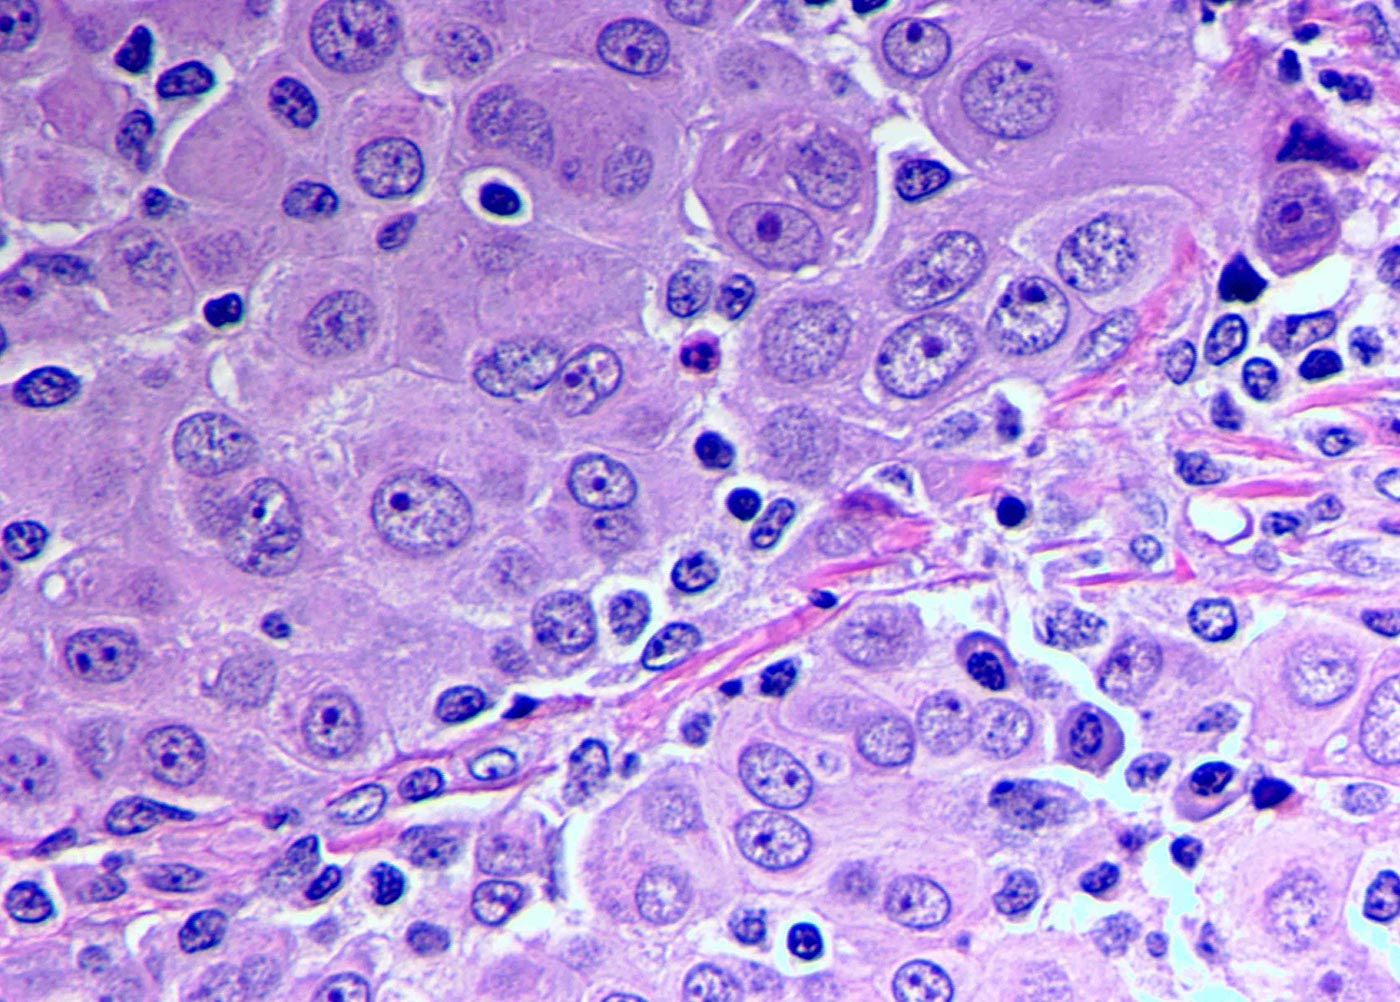 Epithelioid Mesothelioma Cells